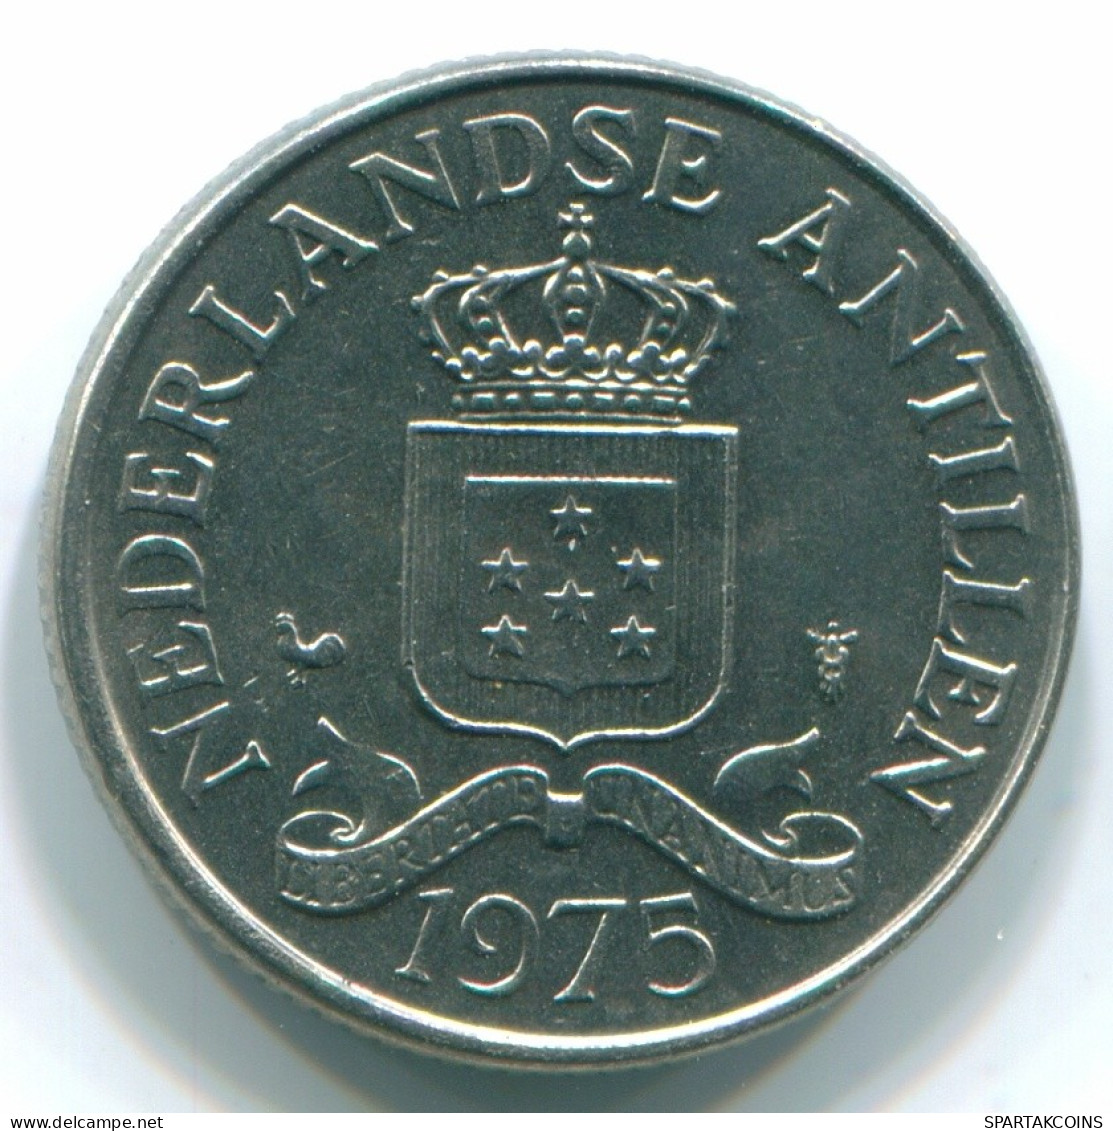 25 CENTS 1975 NIEDERLÄNDISCHE ANTILLEN Nickel Koloniale Münze #S11635.D.A - Antilles Néerlandaises